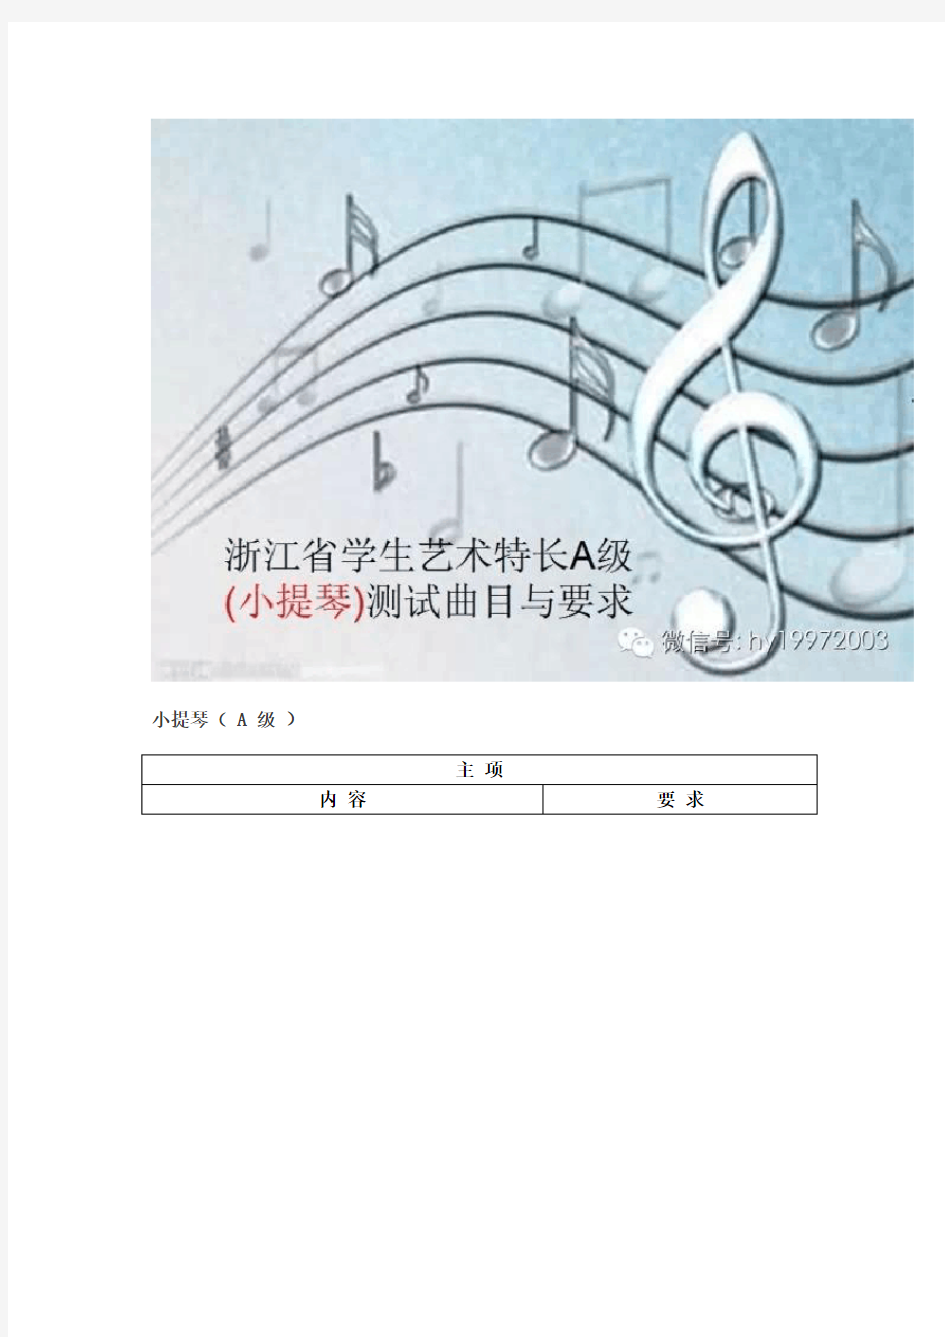 浙江省学生艺术特长A级测试小提琴曲目及要求